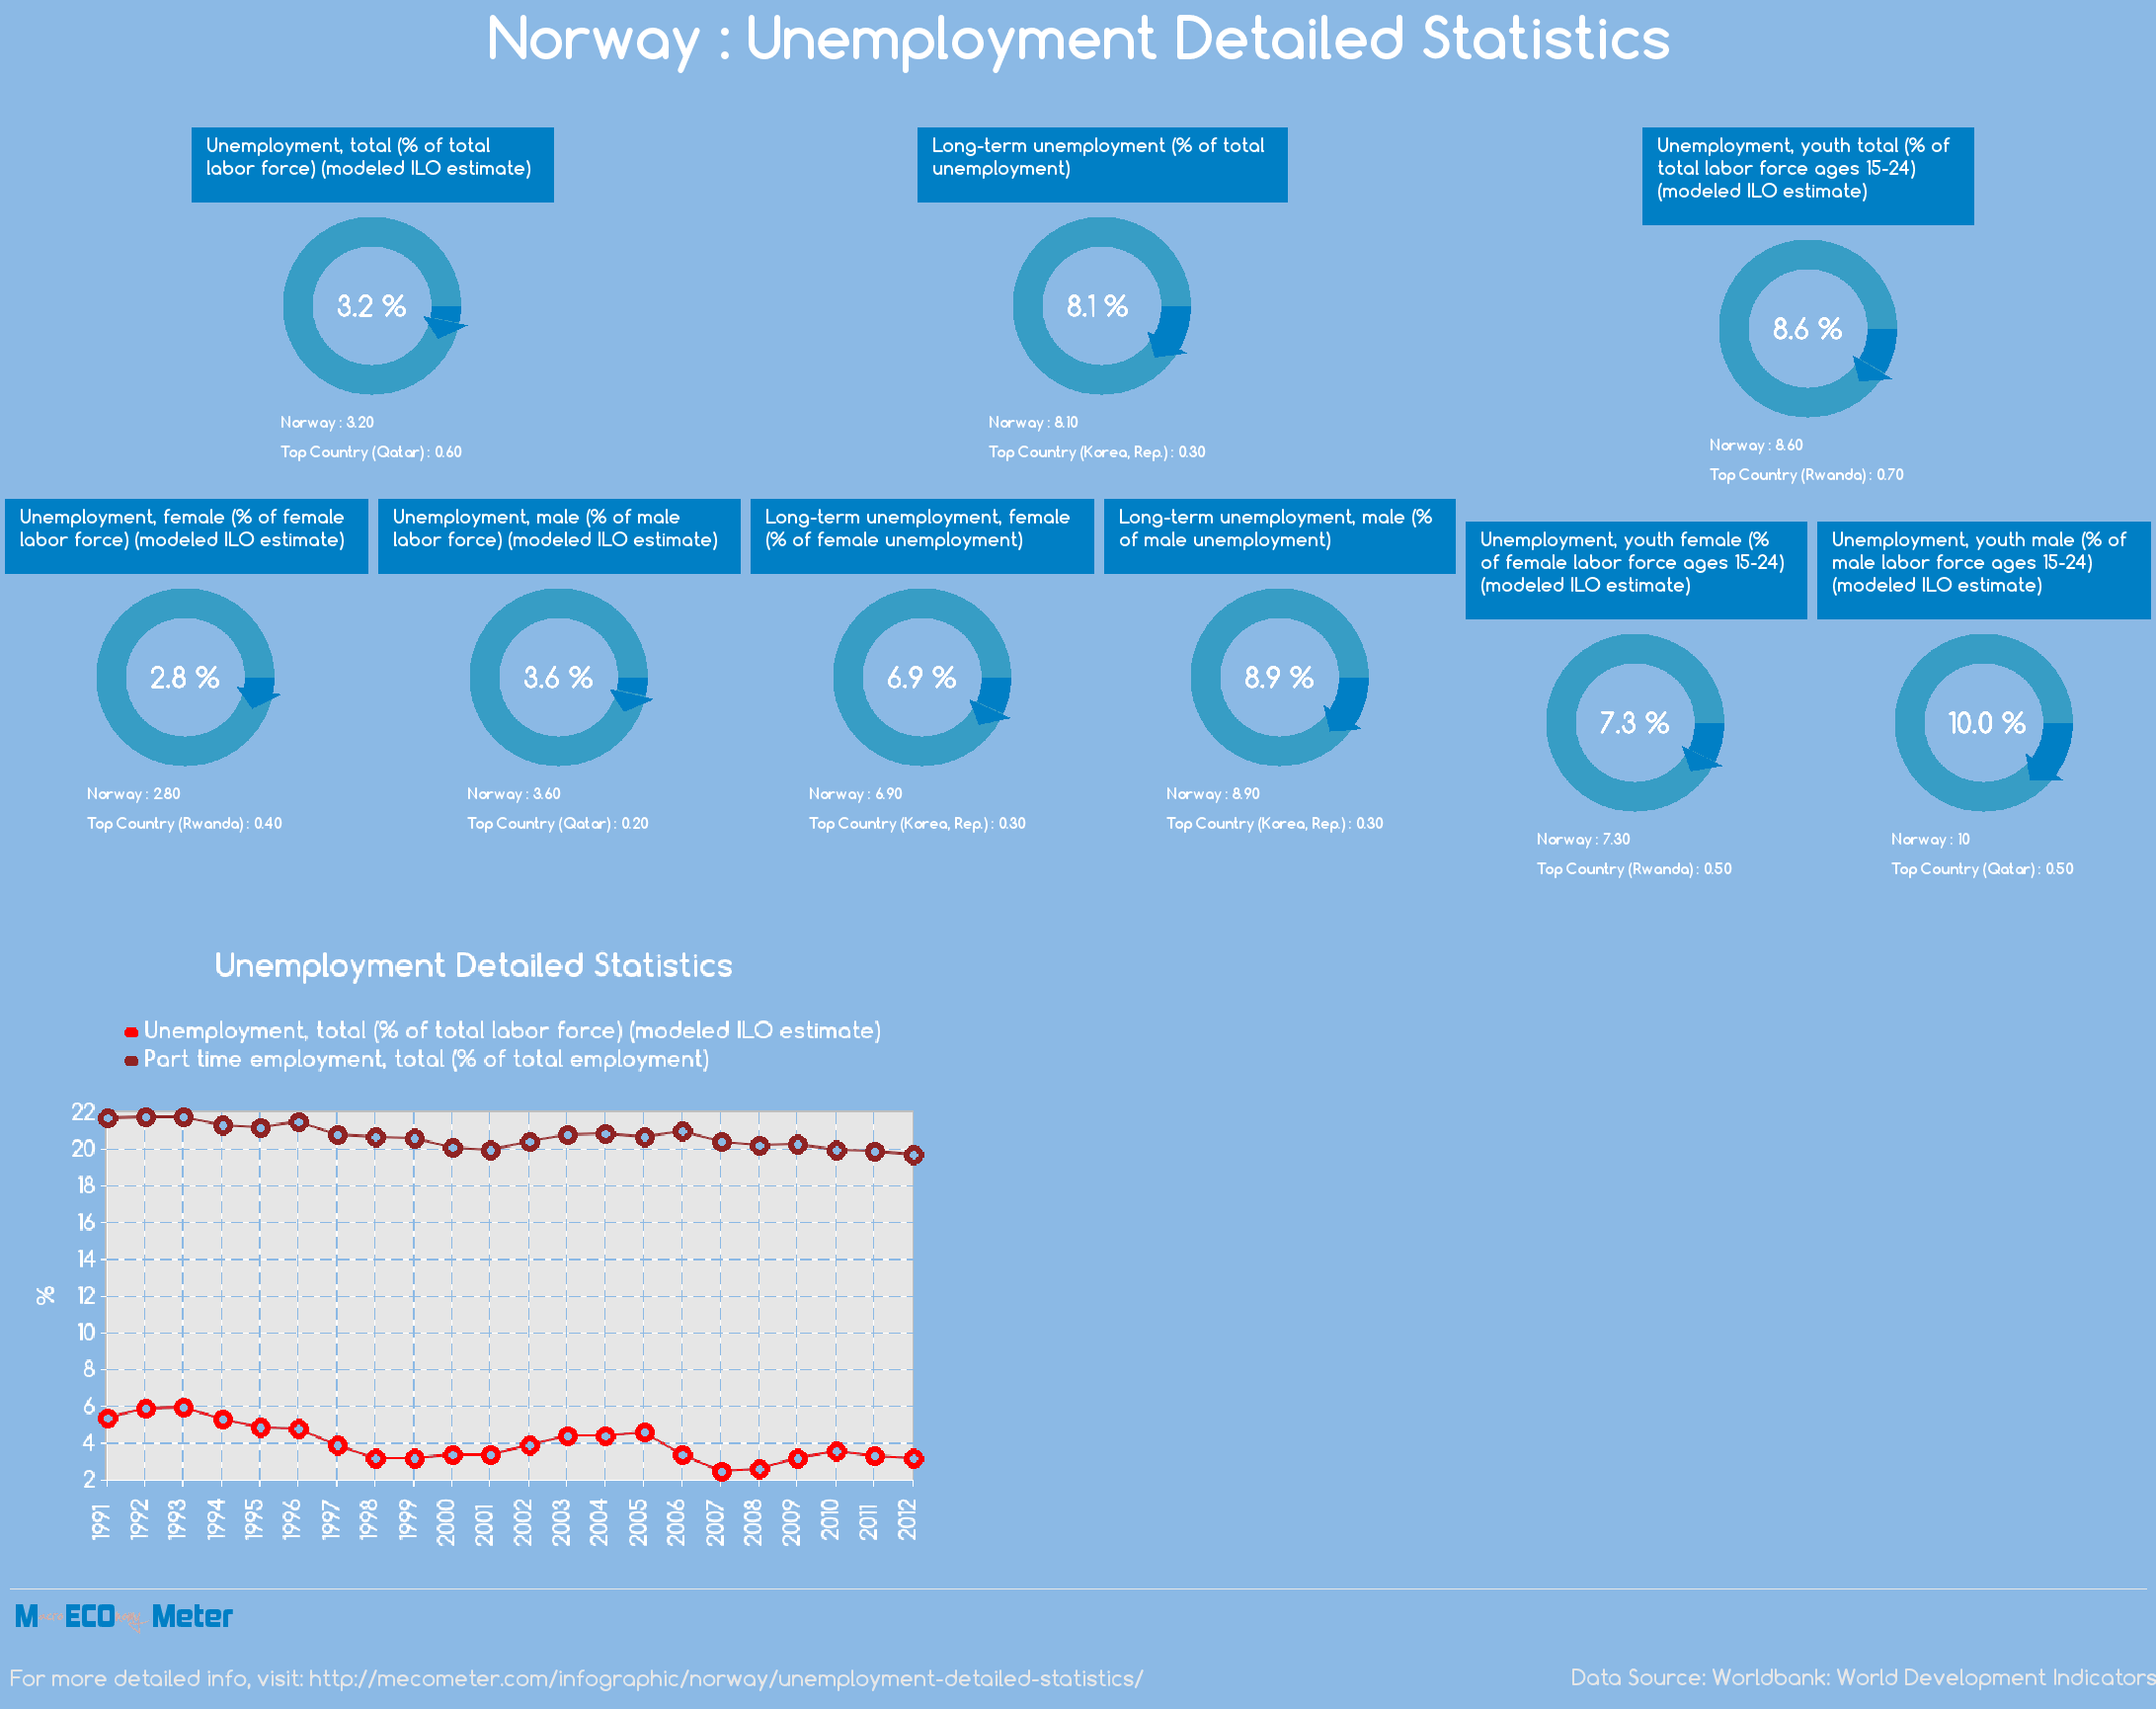 Norway : Unemployment Detailed Statistics